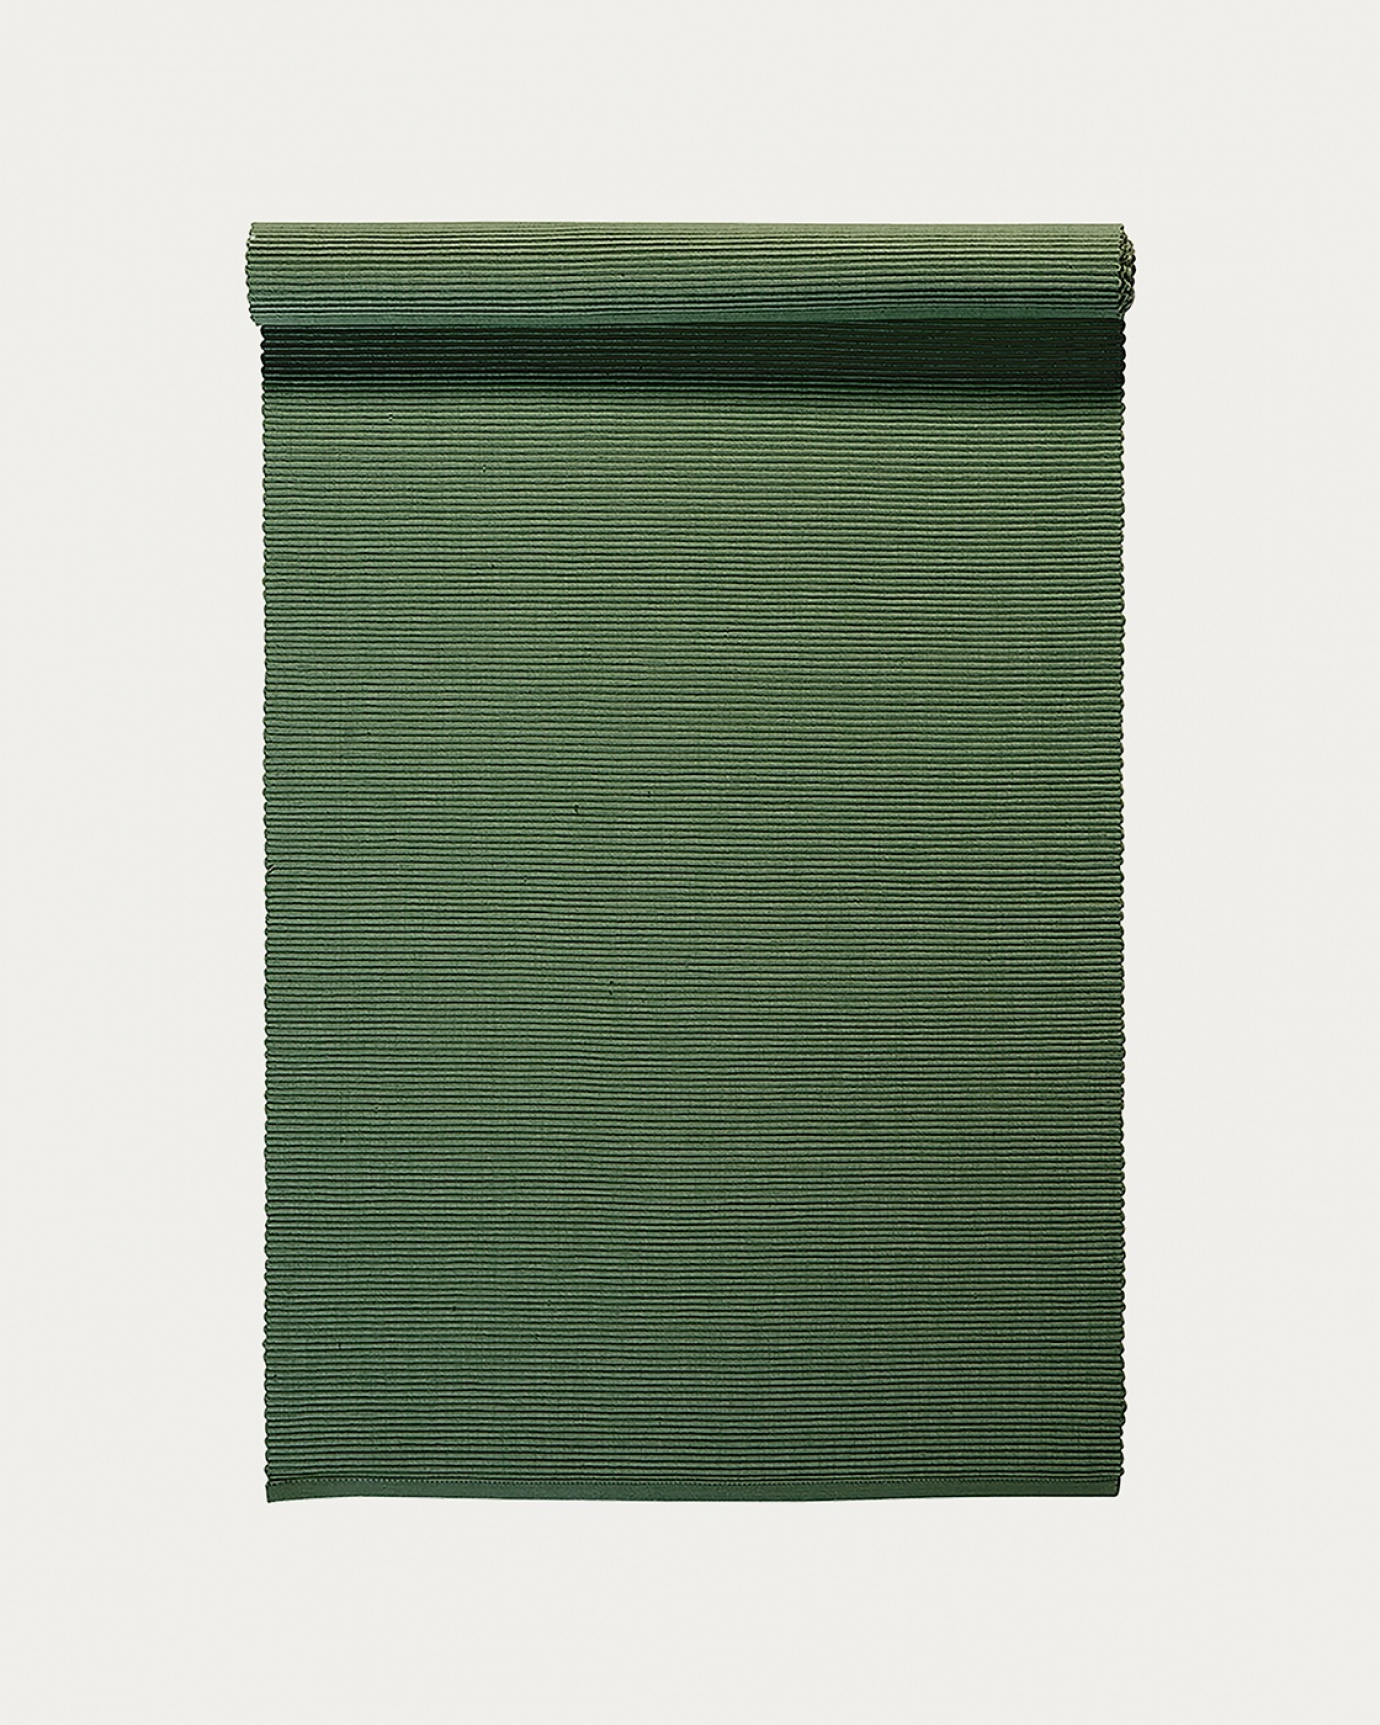 Image du produit chemin de table UNI vert olive en coton doux de qualité côtelée de LINUM DESIGN. Taille 45 x 150 cm.